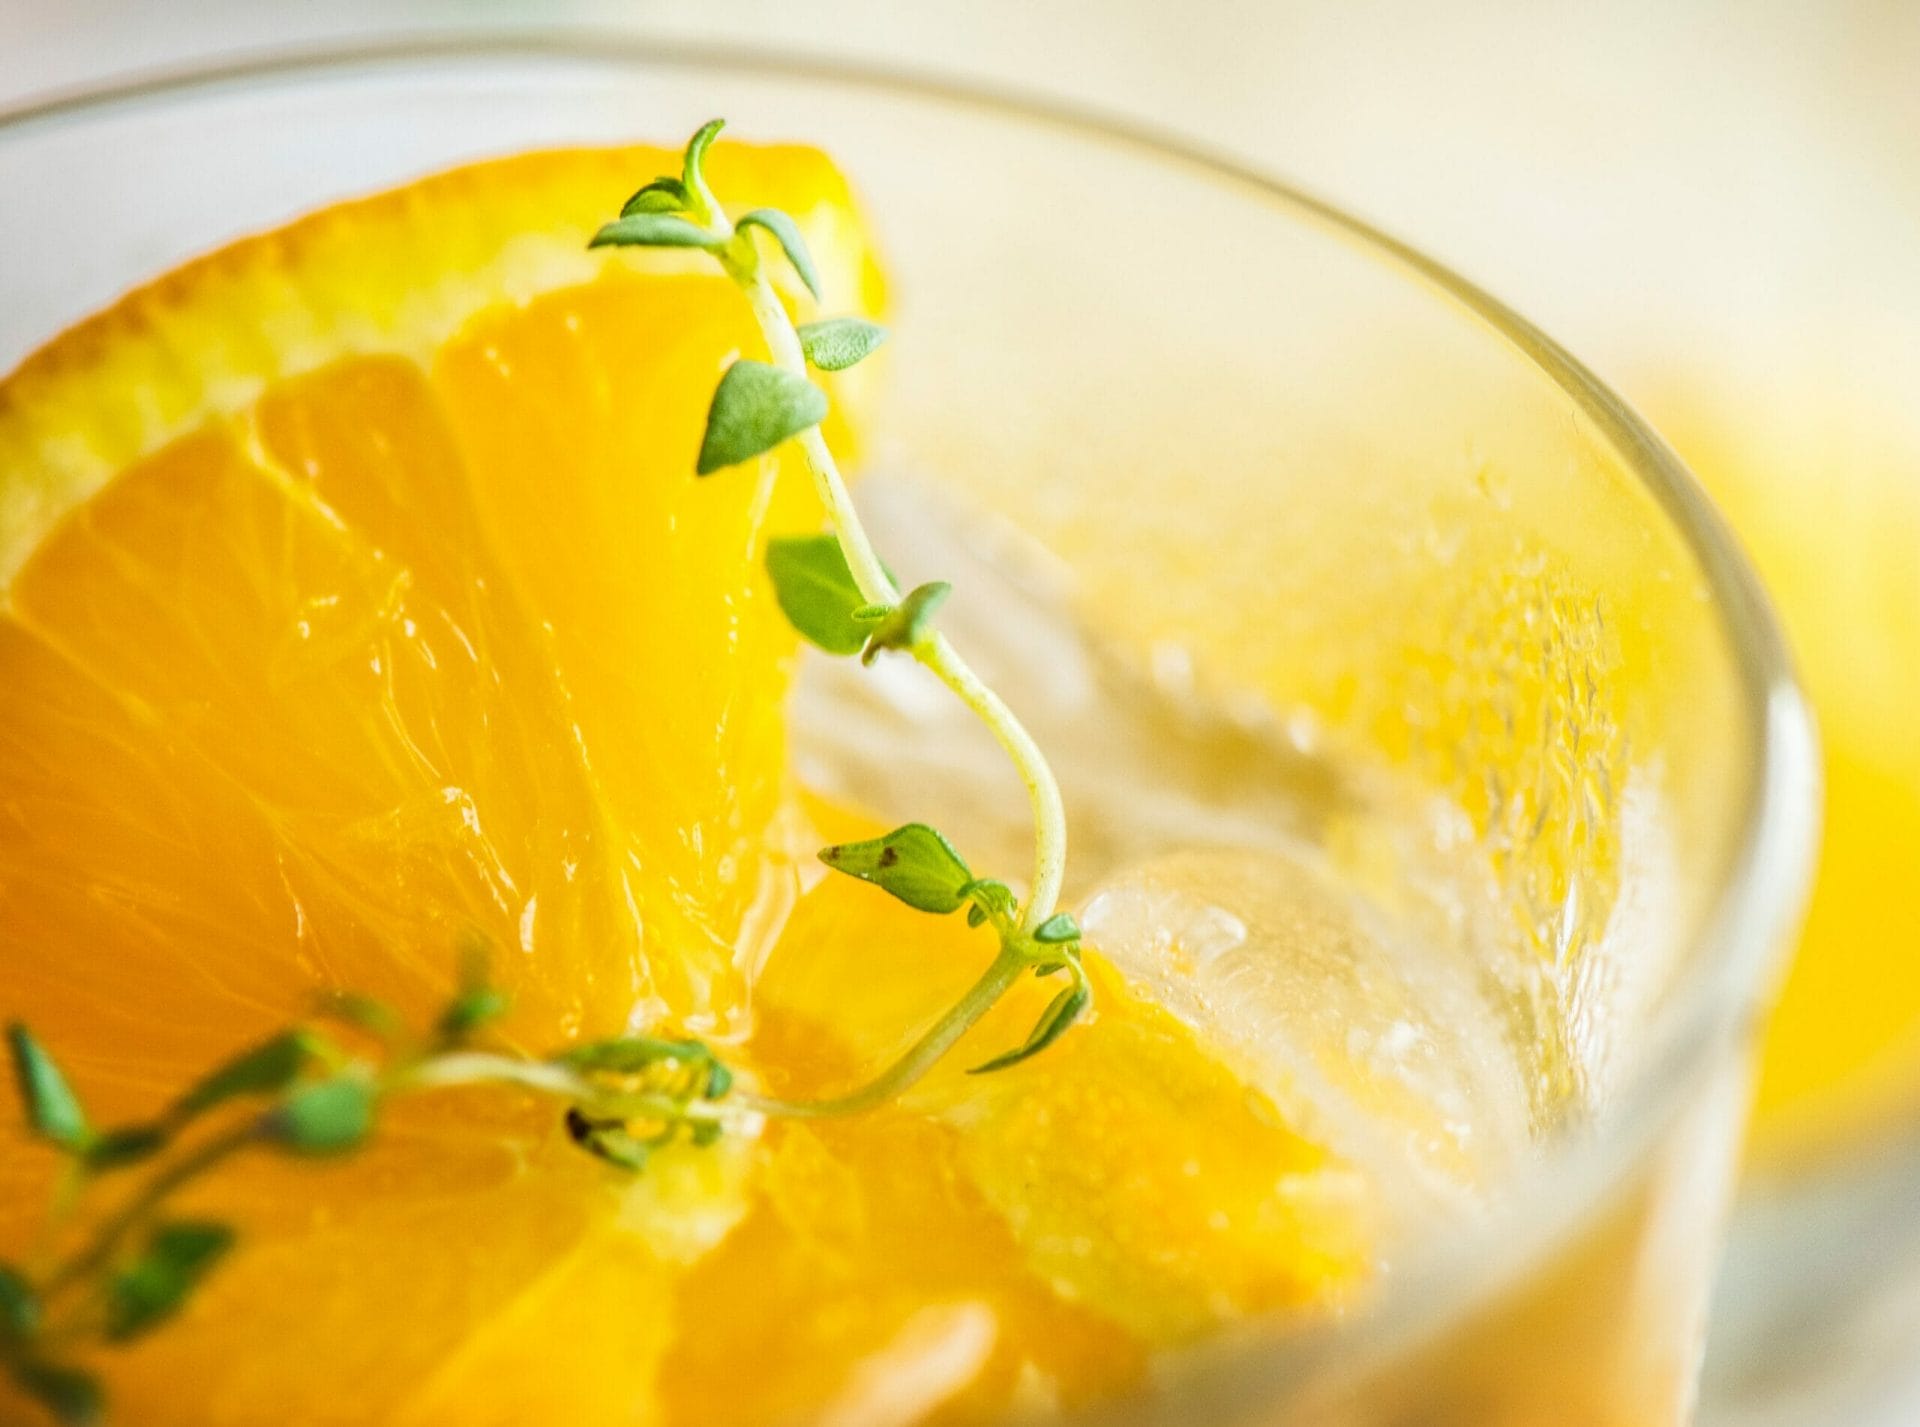 Il limoncello è una bevanda apprezzata da molti, un liquore italiano che si prepara con zucchero, alcool e scorza di limone.